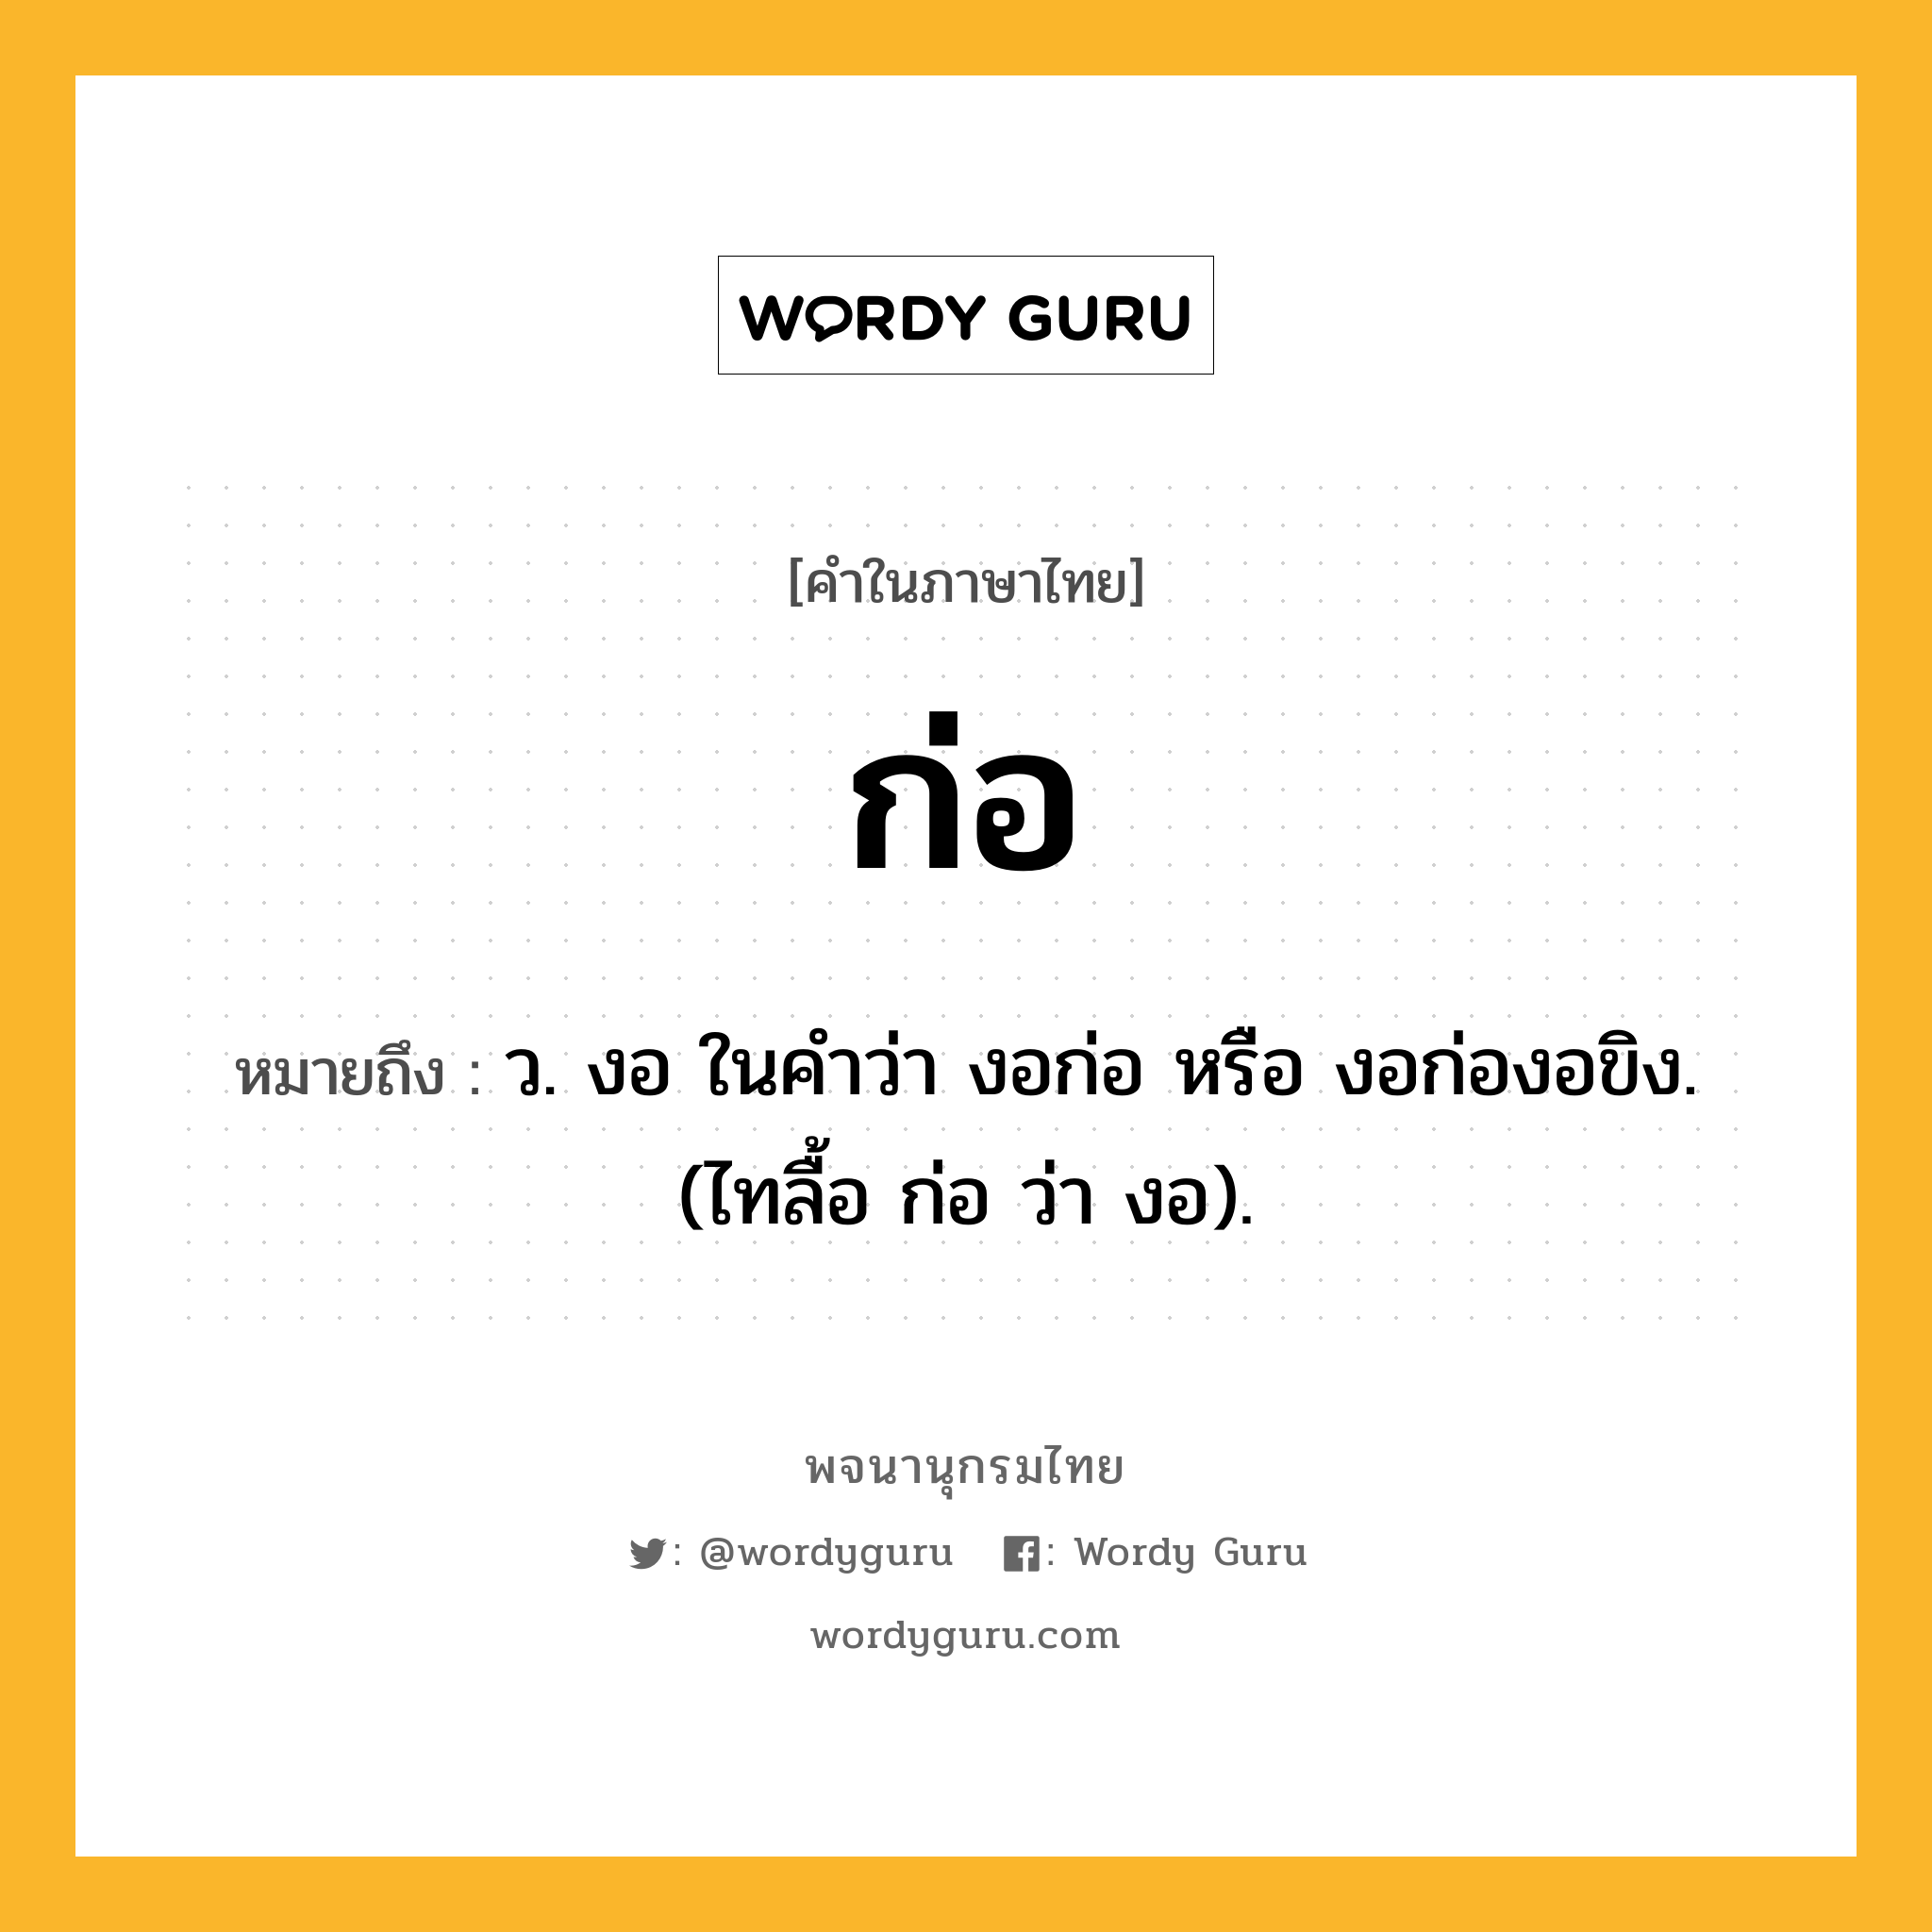 ก่อ หมายถึงอะไร?, คำในภาษาไทย ก่อ หมายถึง ว. งอ ในคำว่า งอก่อ หรือ งอก่องอขิง. (ไทลื้อ ก่อ ว่า งอ).